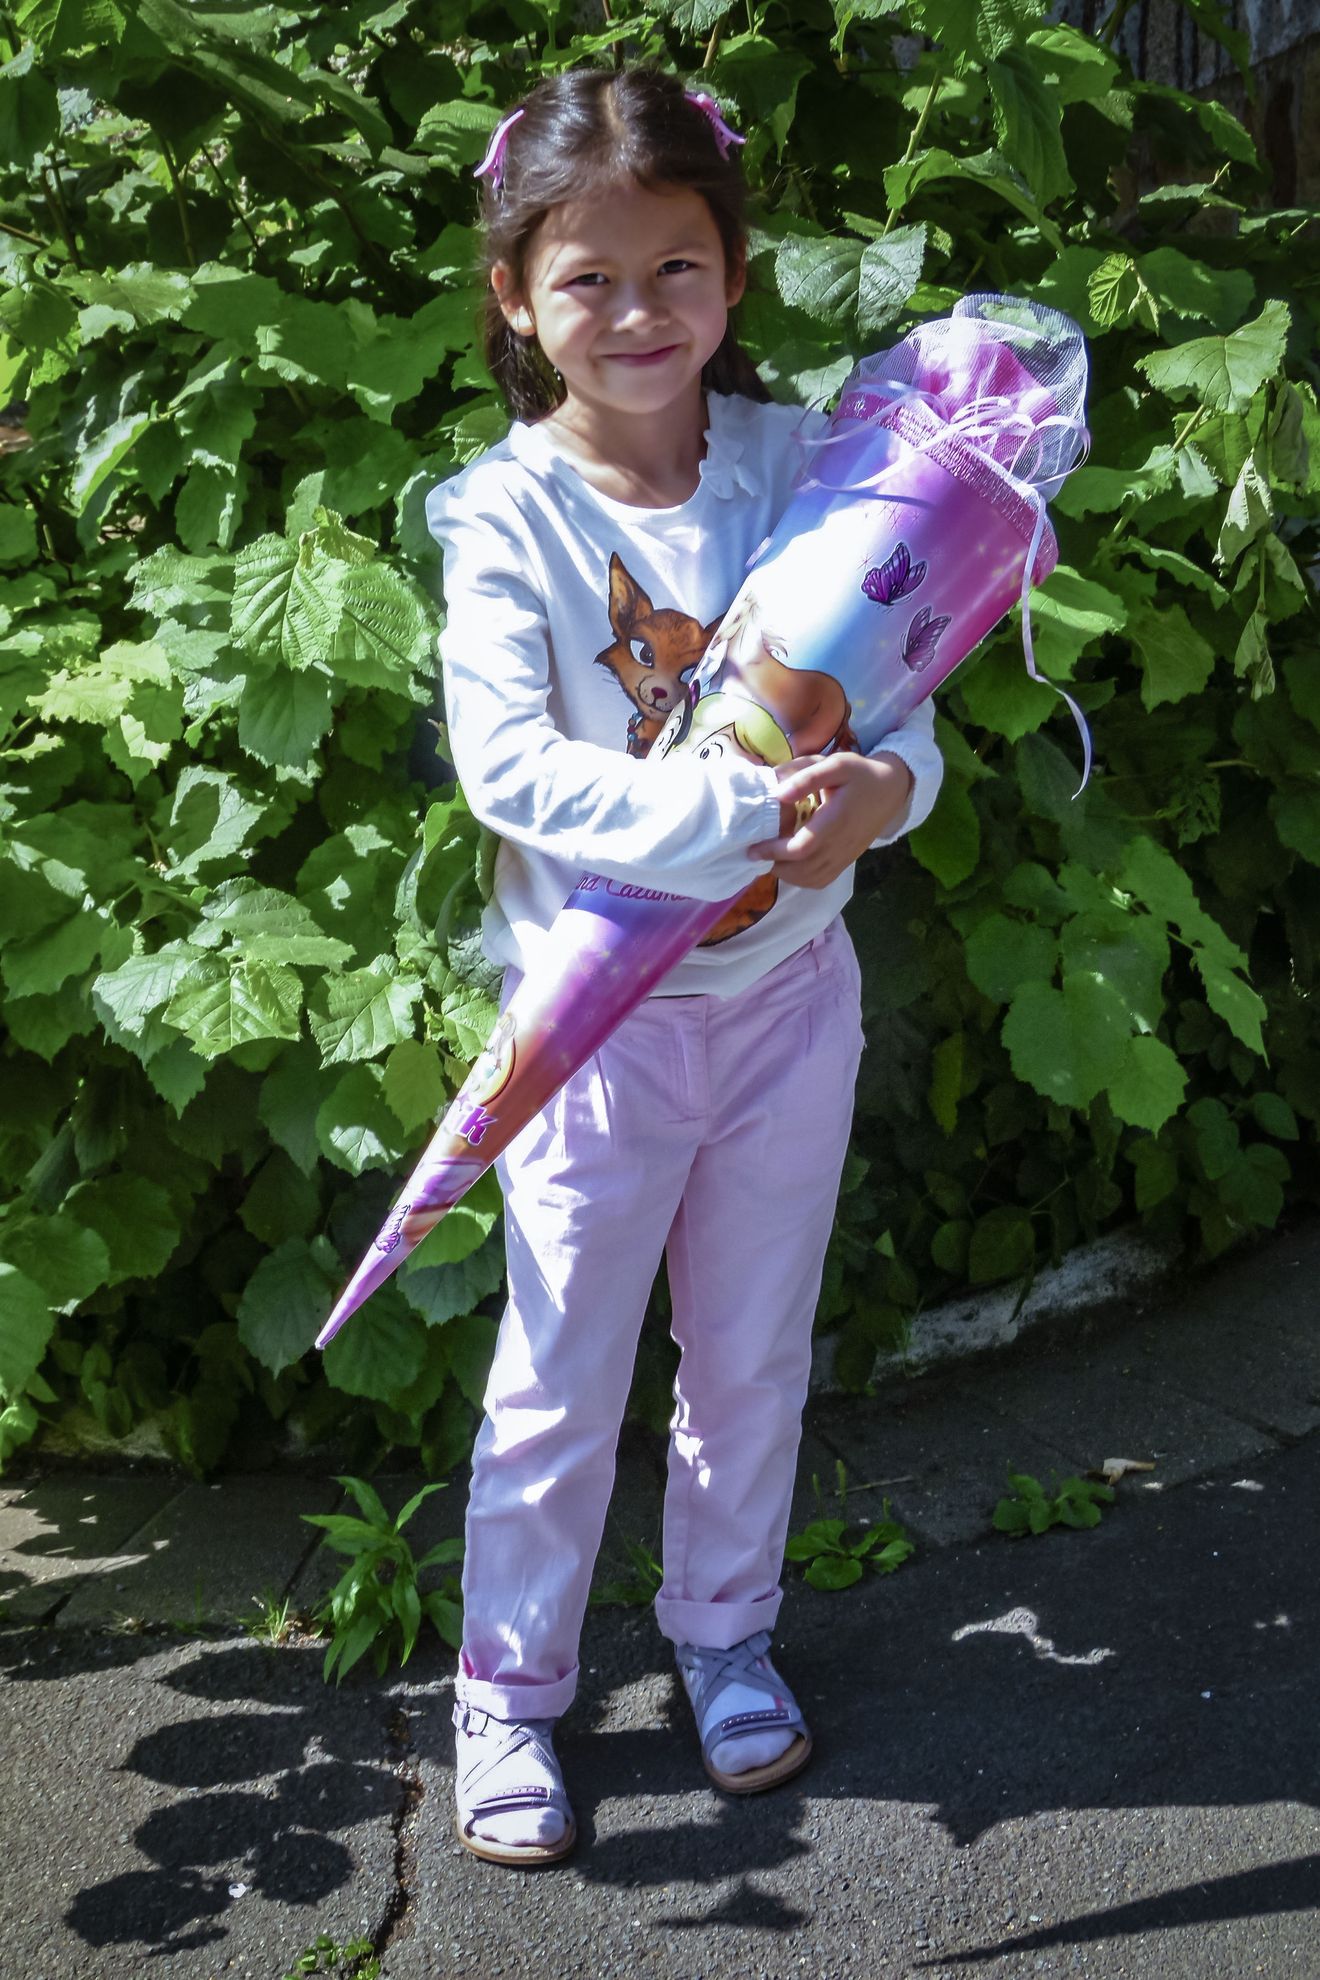 Das dunkelhaarige Mädchen steht vor einer grünen Hecke und hält eine lilafarbene Zuckertüte in der Hand